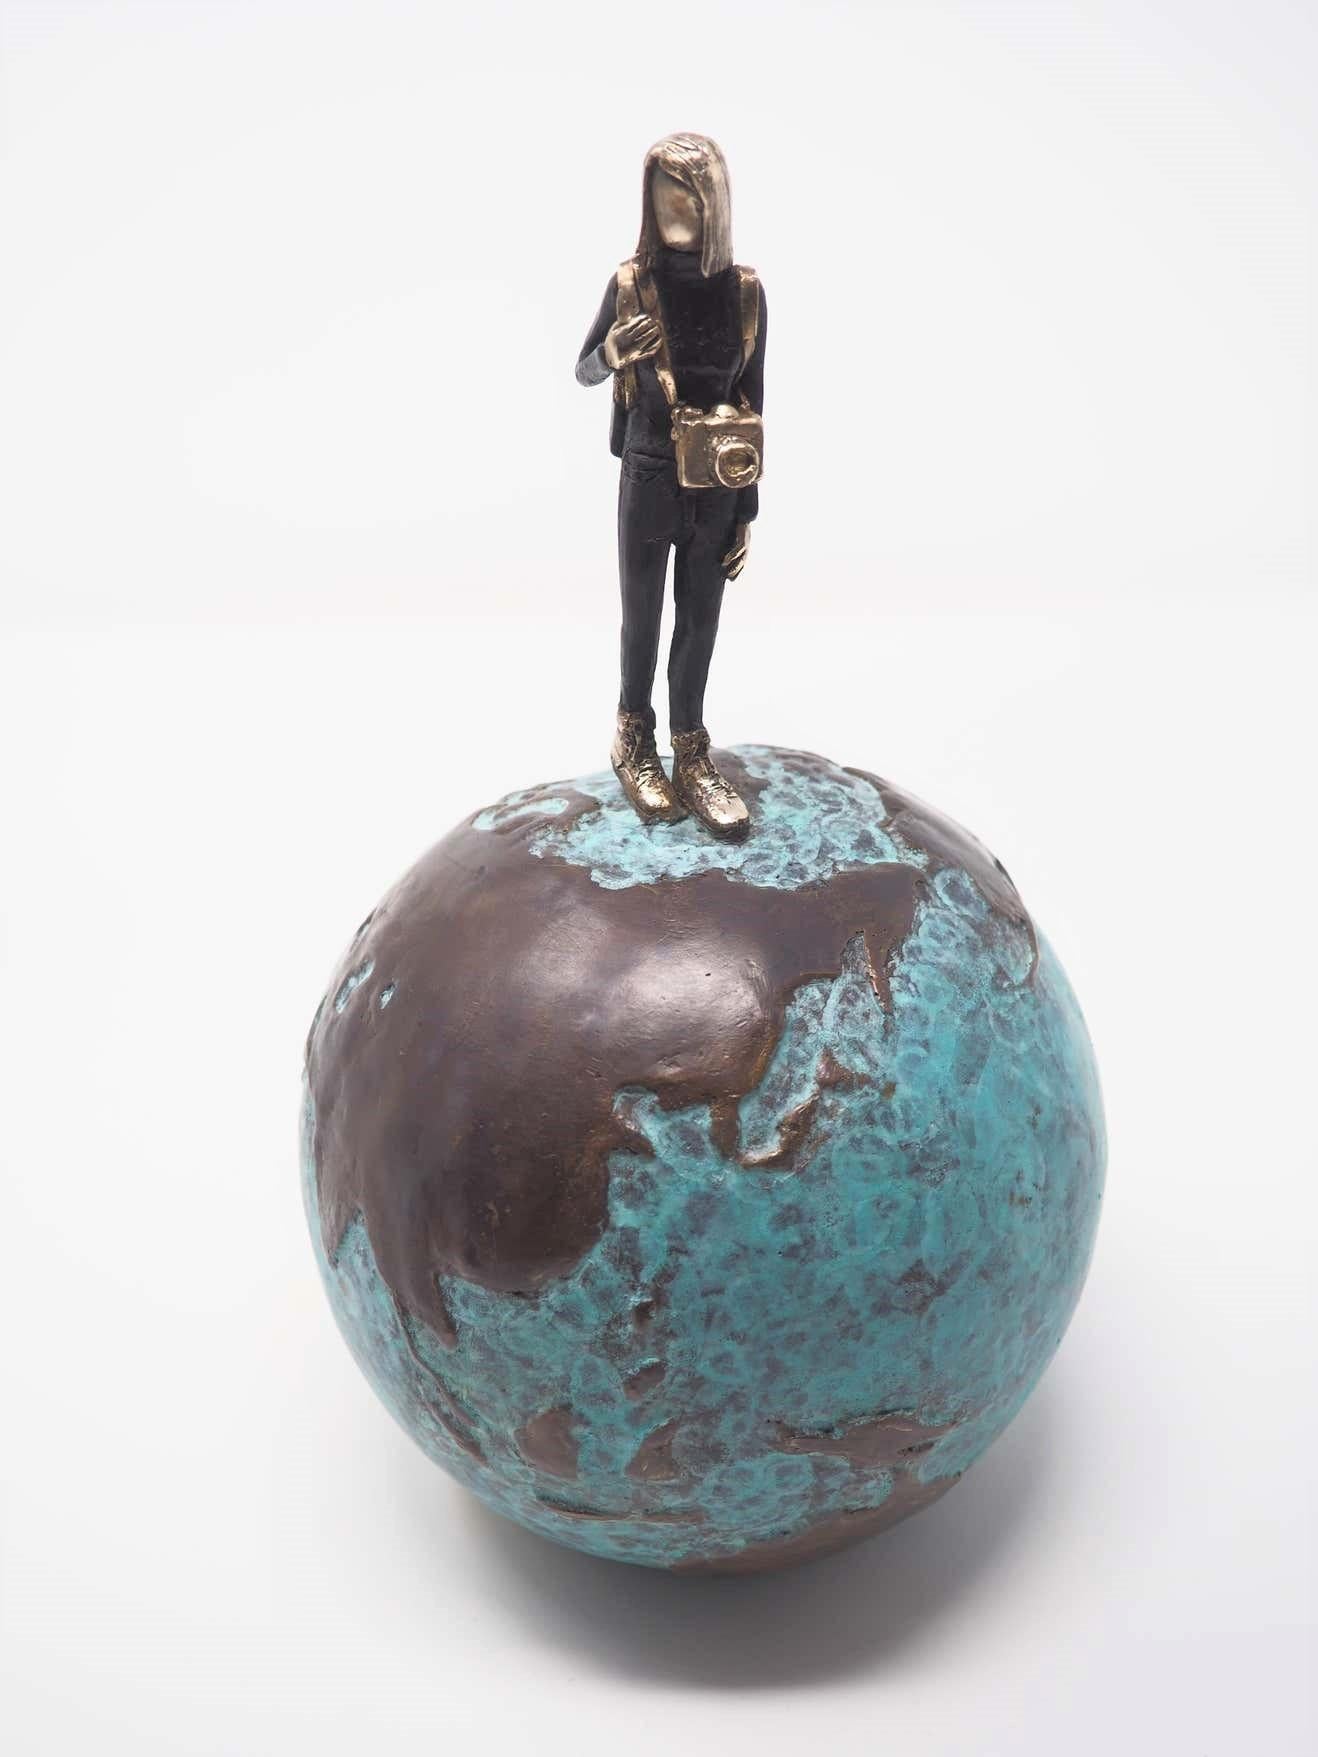 Mireia Serra Figurative Sculpture - "The Art of Adventure Blue" contemporary figurative bronze sculpture girl travel